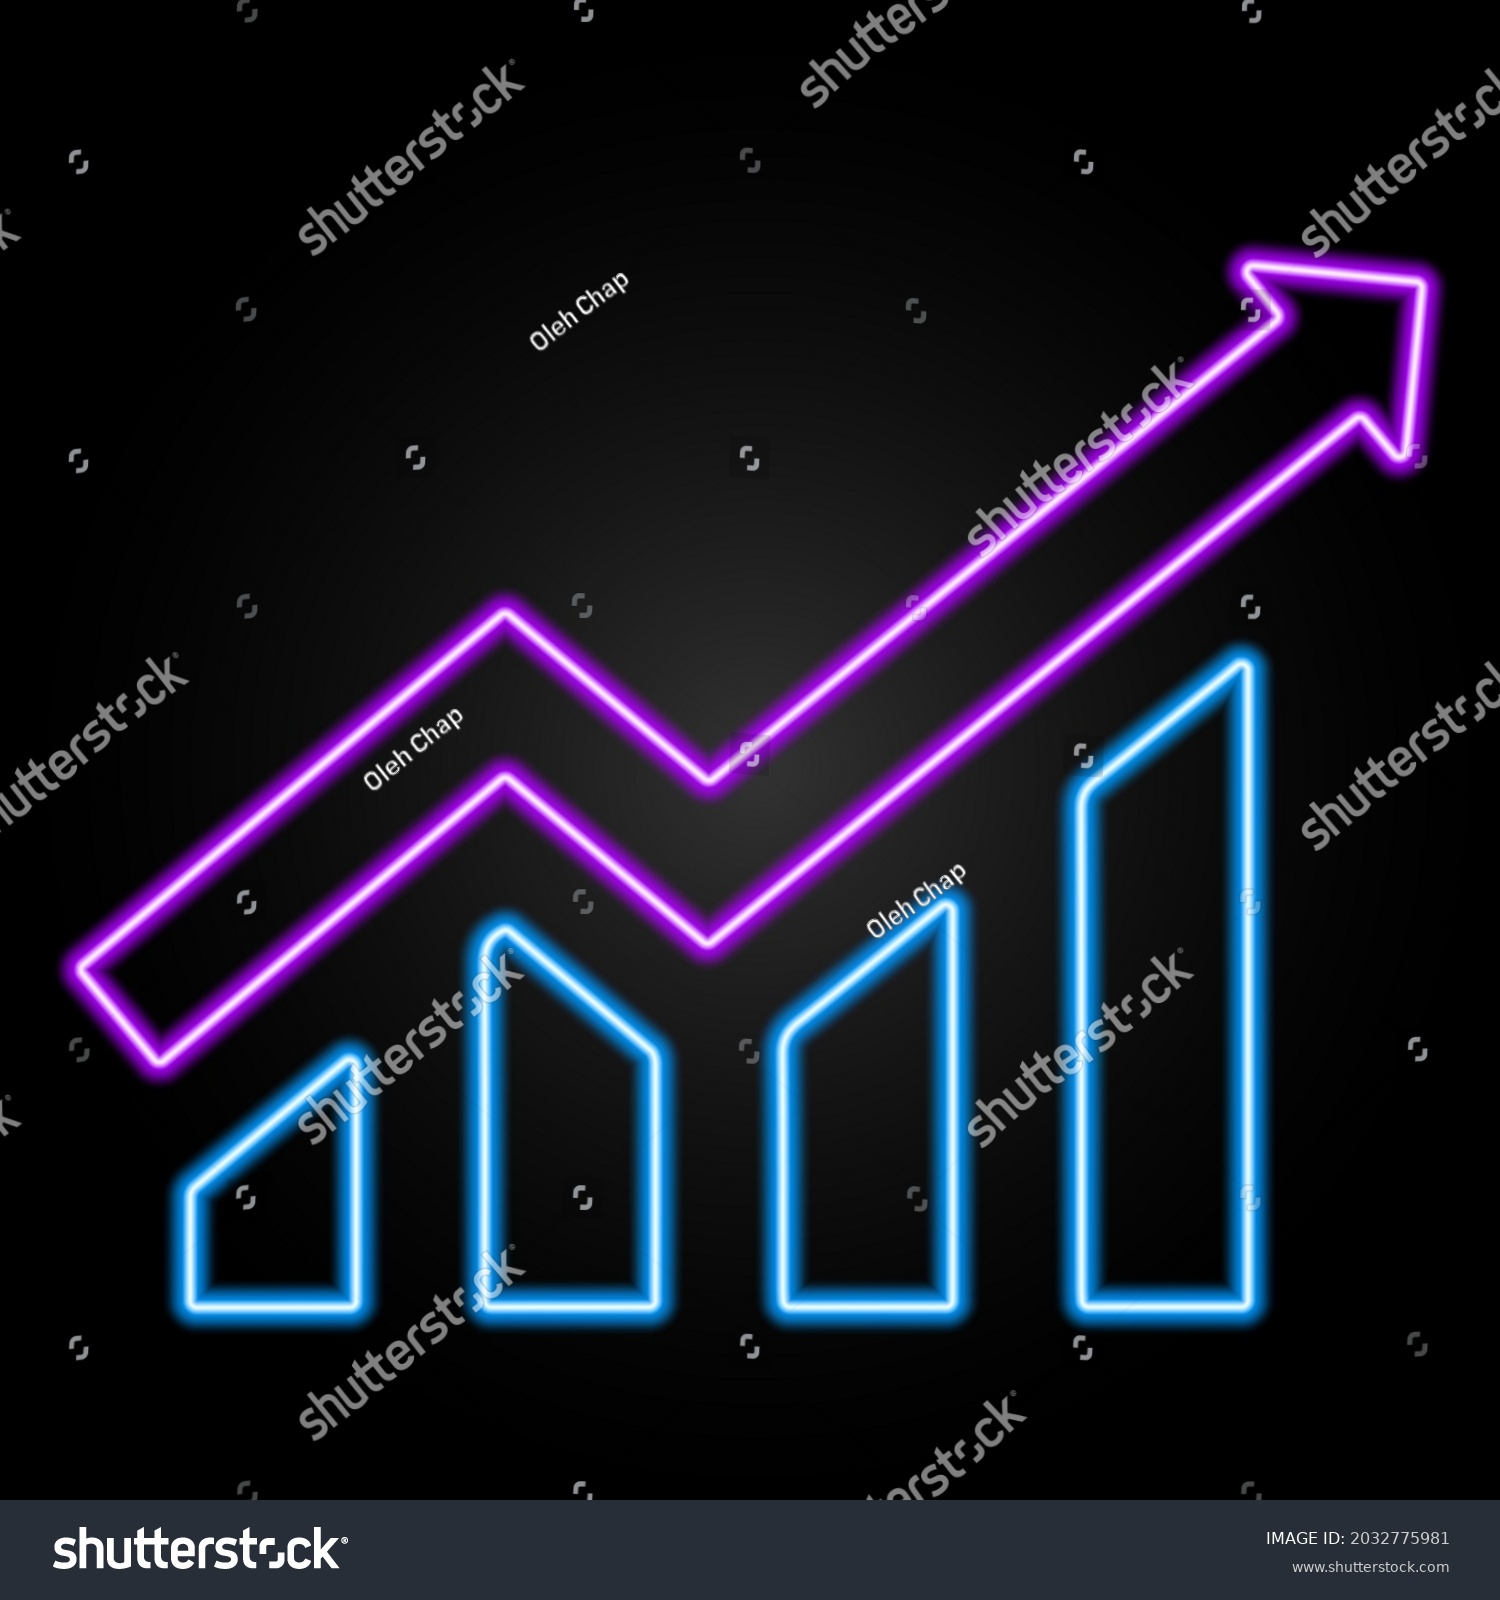 SVG of Business diagram neon sign, modern glowing banner design, colorful trend of modern design on black background. Vector illustration. svg